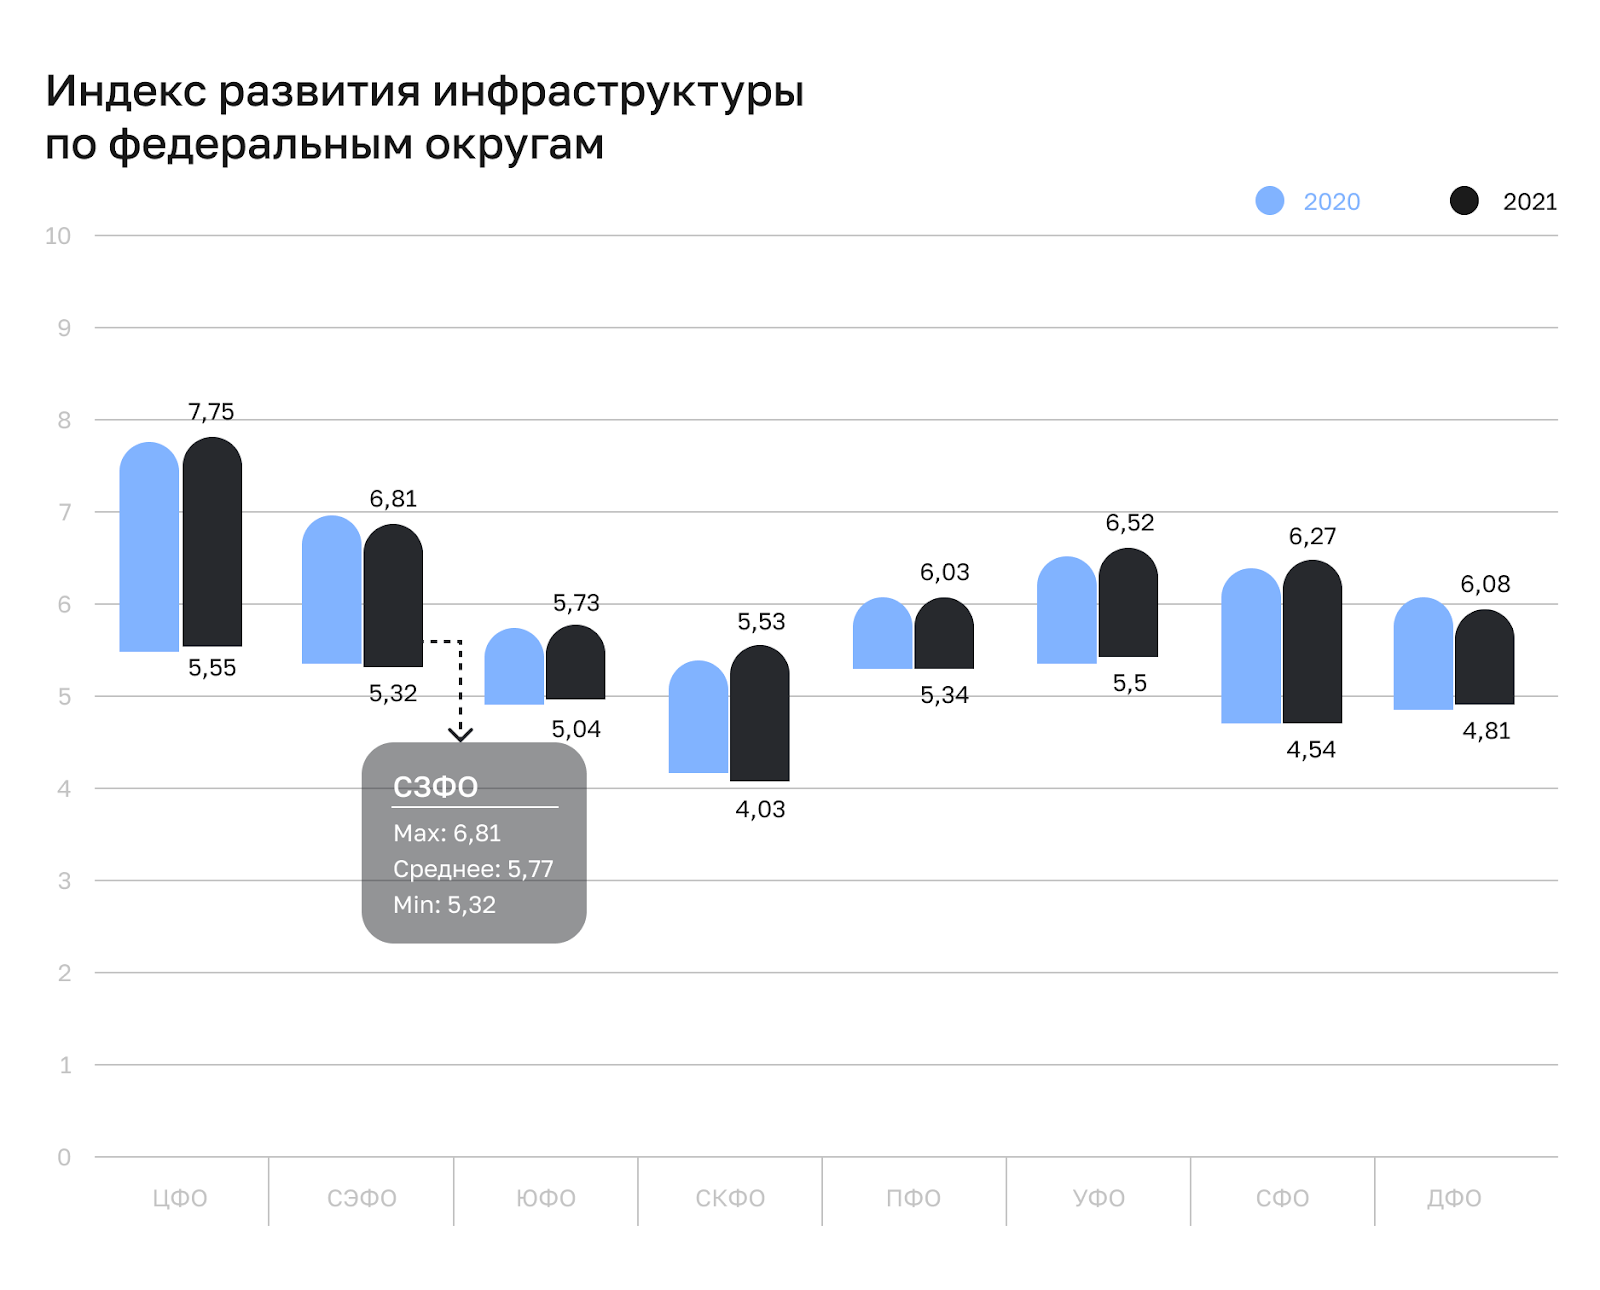 В СЗФО индекс развития инфраструктуры выше среднероссийского уровня (5,62)